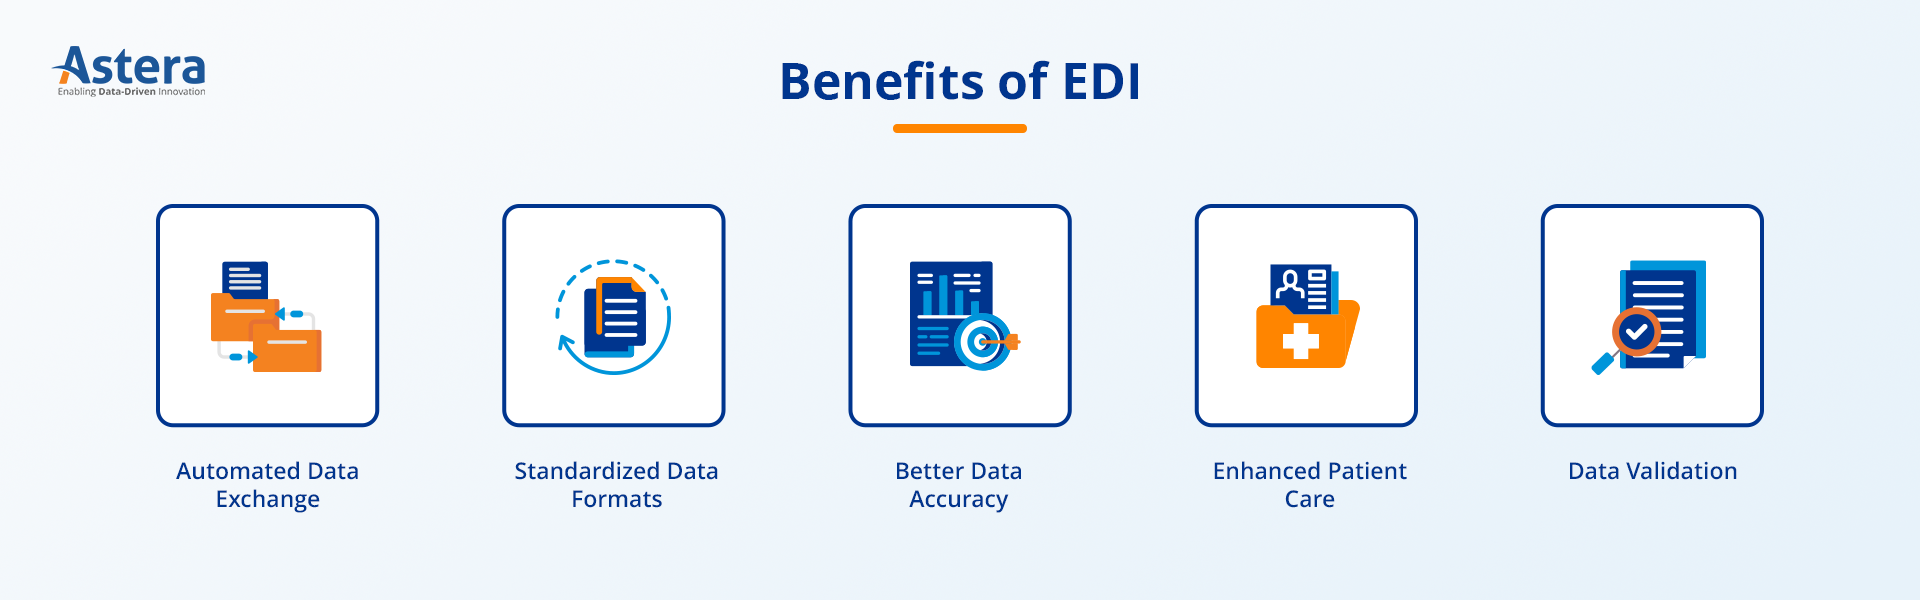 Beneficios del EDI en el cuidado de la salud